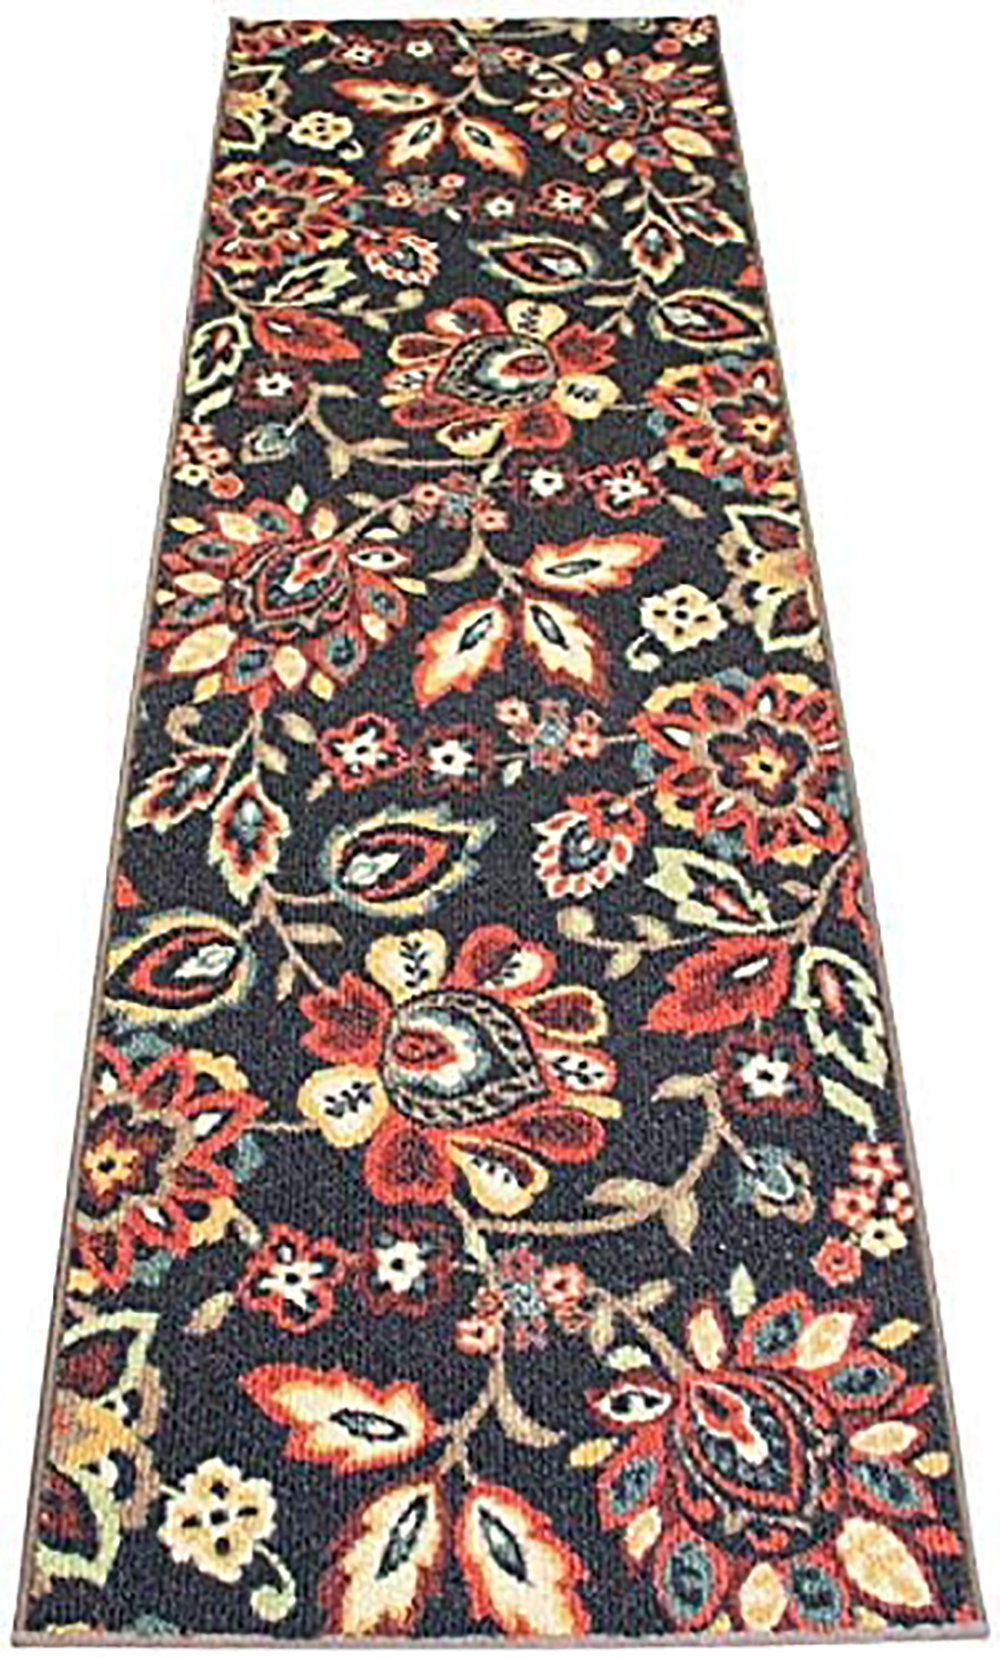 Indoor/Outdoor Berber Carpet Runner, Non-slip